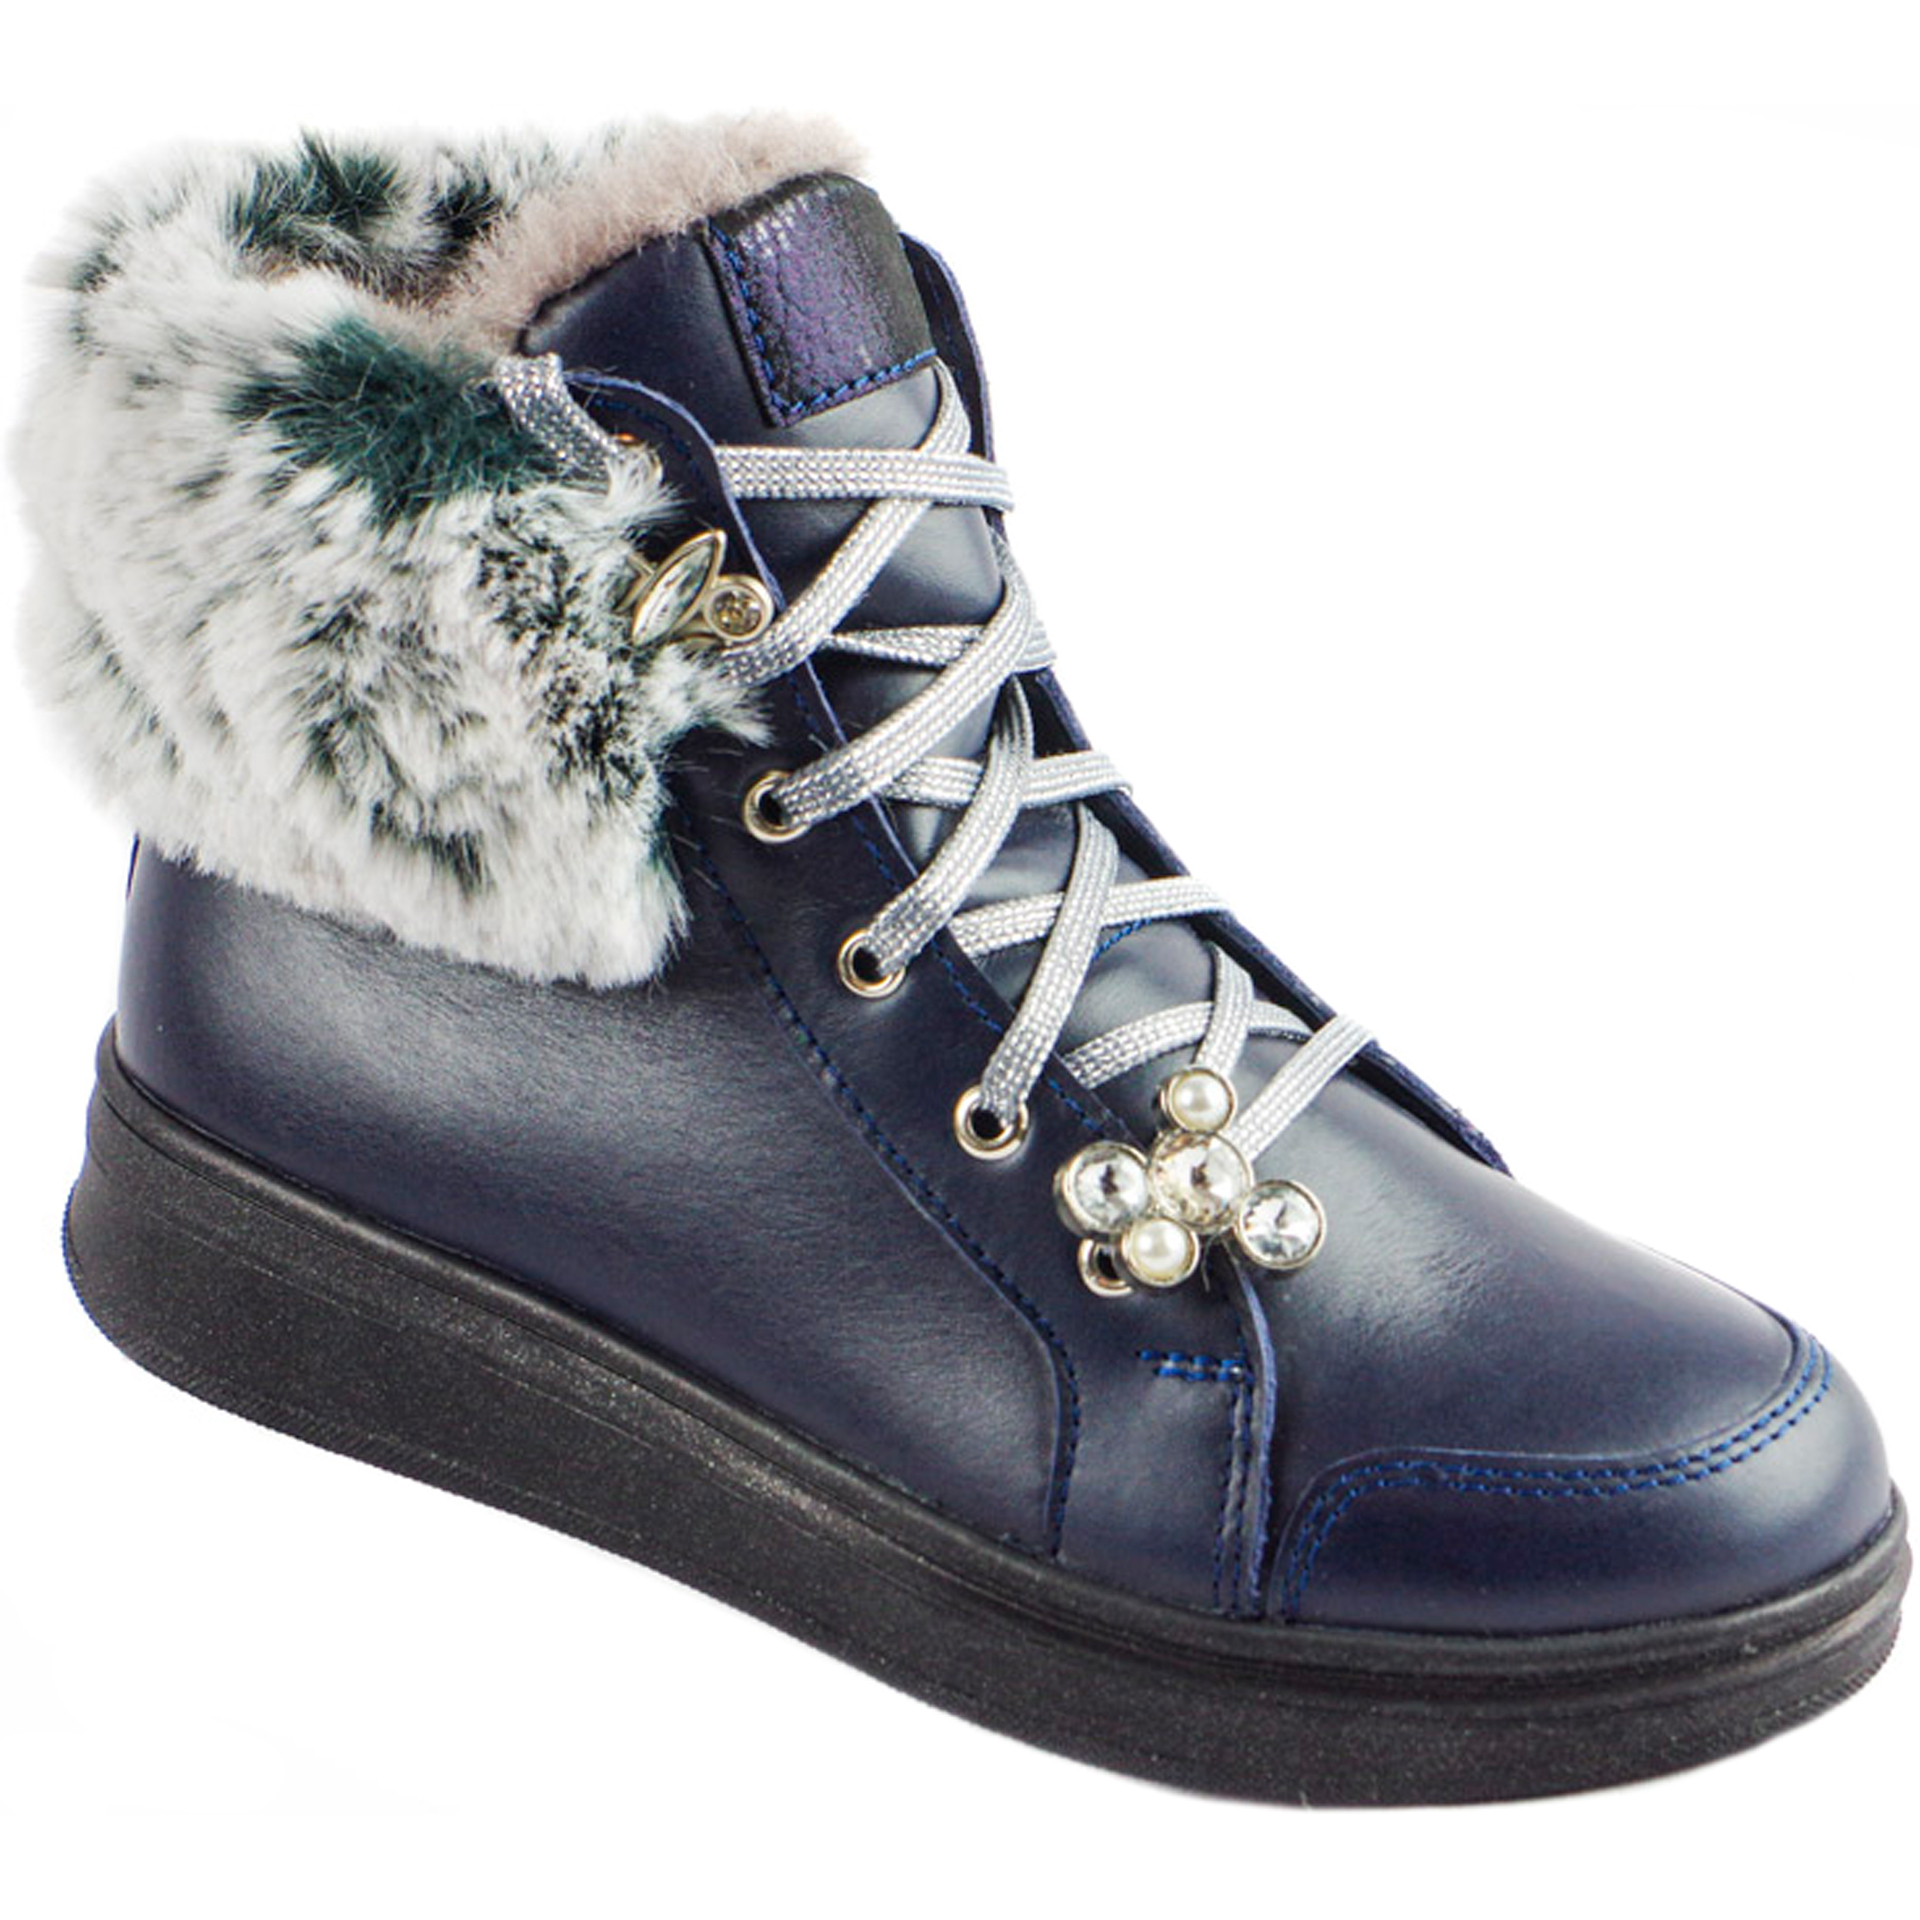 Зимние ботинки (1741) материал Натуральная кожа, цвет Синий  для девочки 31-40 размеры – Sole Kids, Днепр